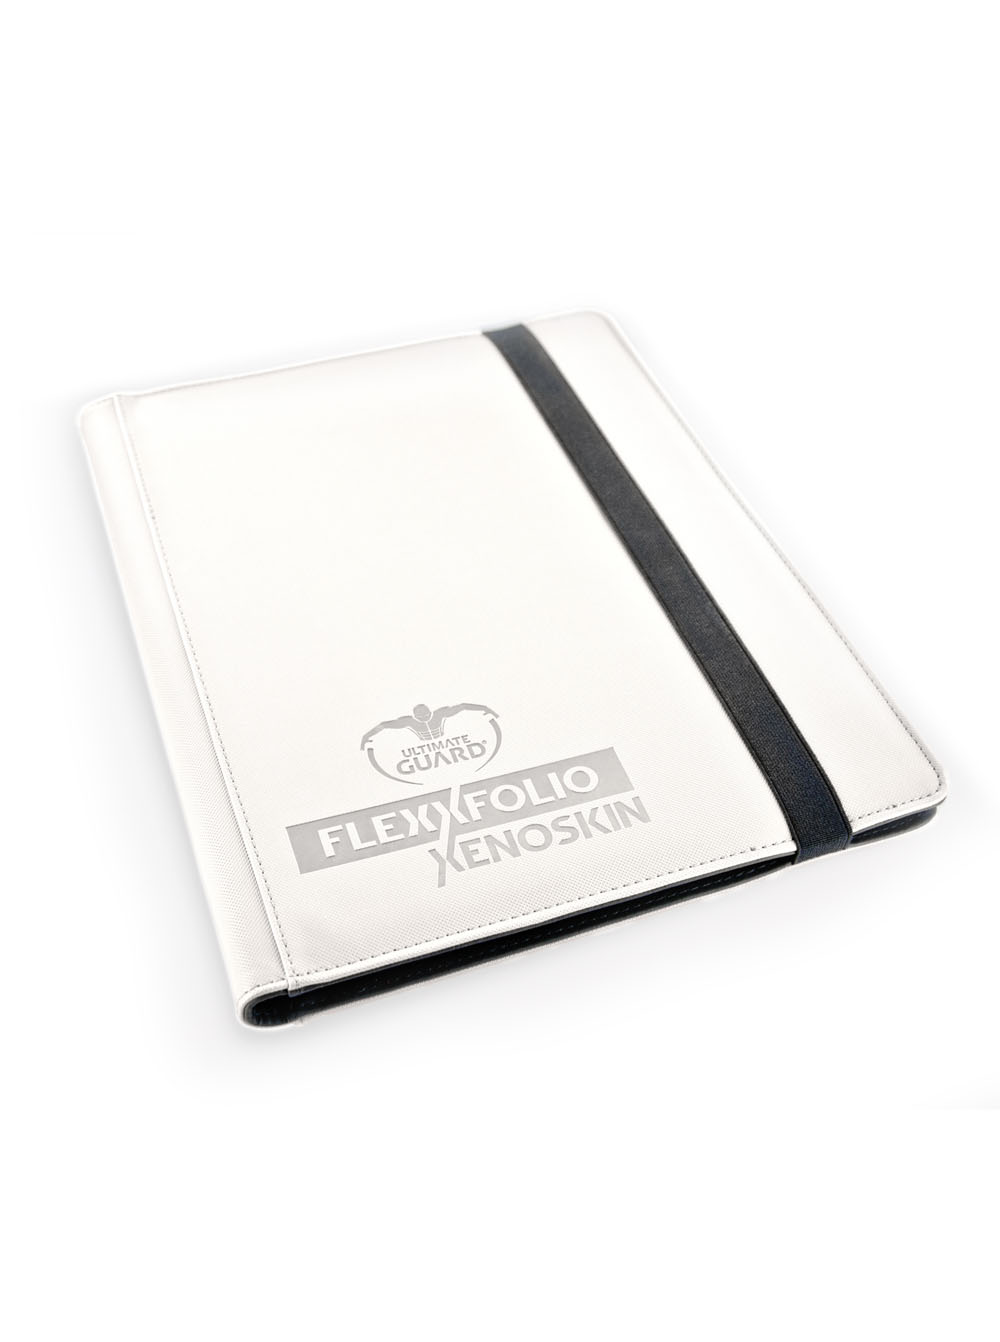 ULTIMATE GUARD Album portfolio A4 FlexXfolio XenoSkin Blanc